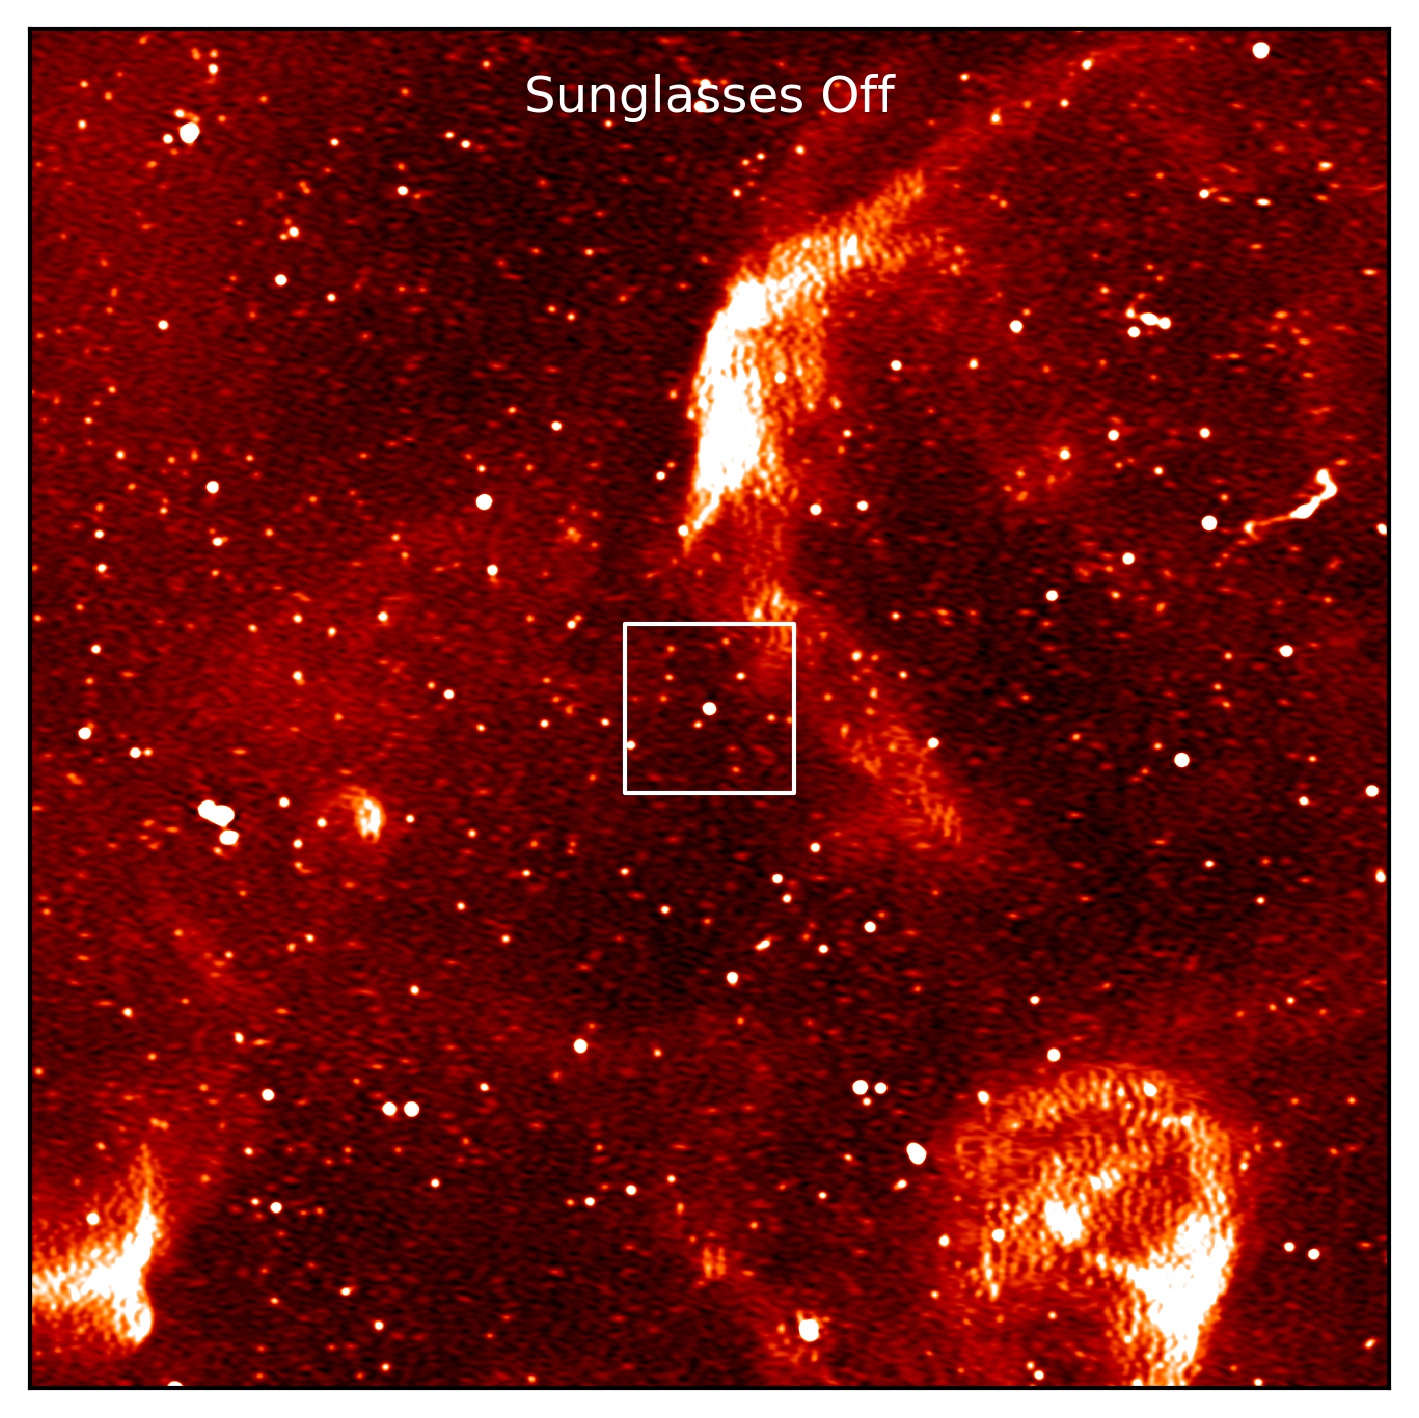 Het gezichtsveld van de MeerKAT-radiotelescoop zonder 'zonnebril' met de nieuwe pulsar